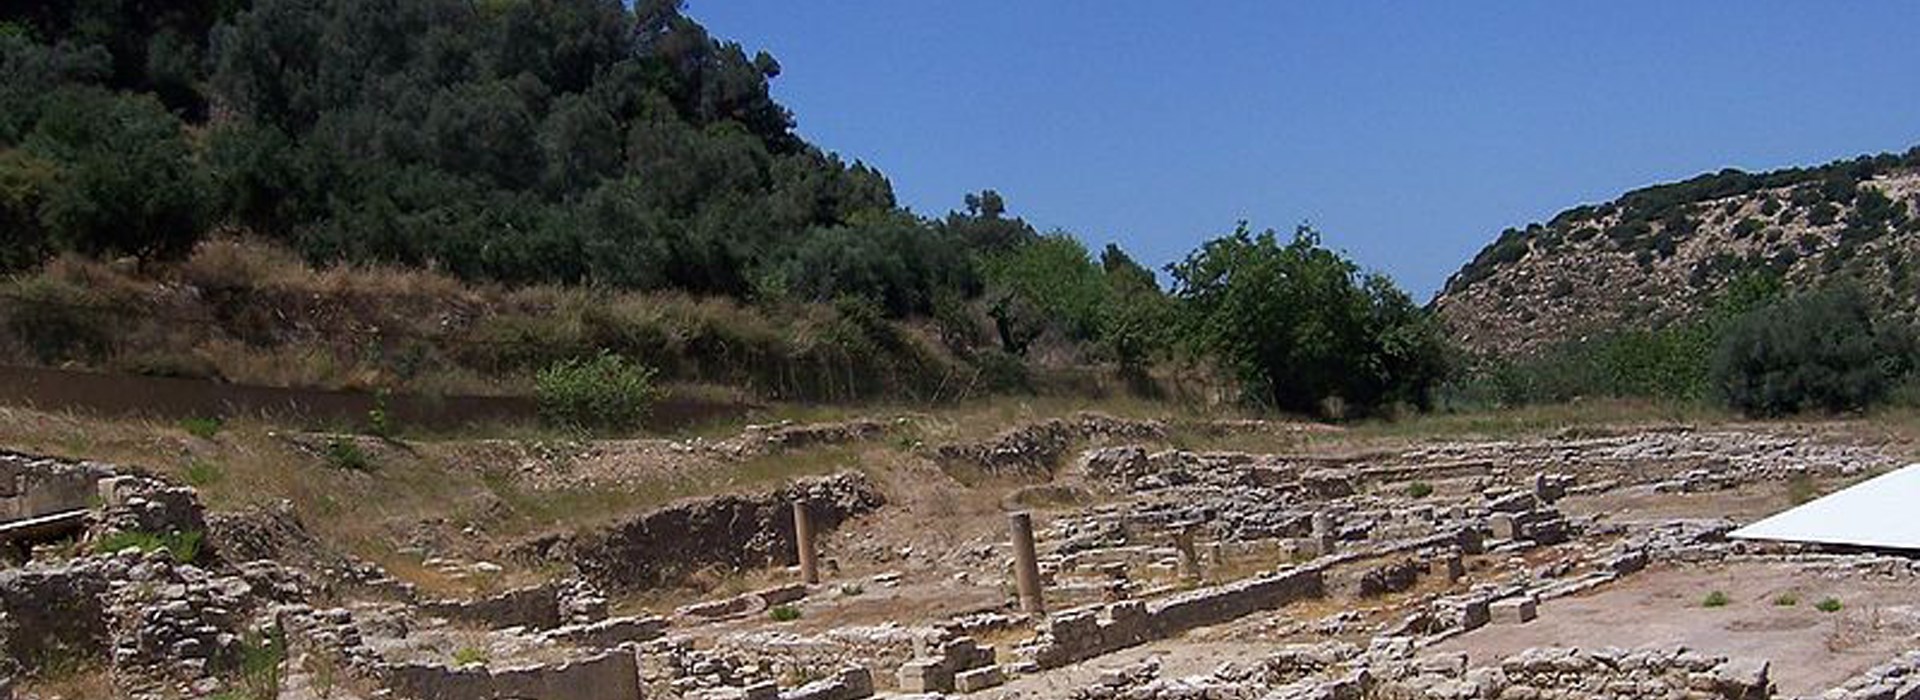 Visiter La cité antique de l'Eleftherna - Crète